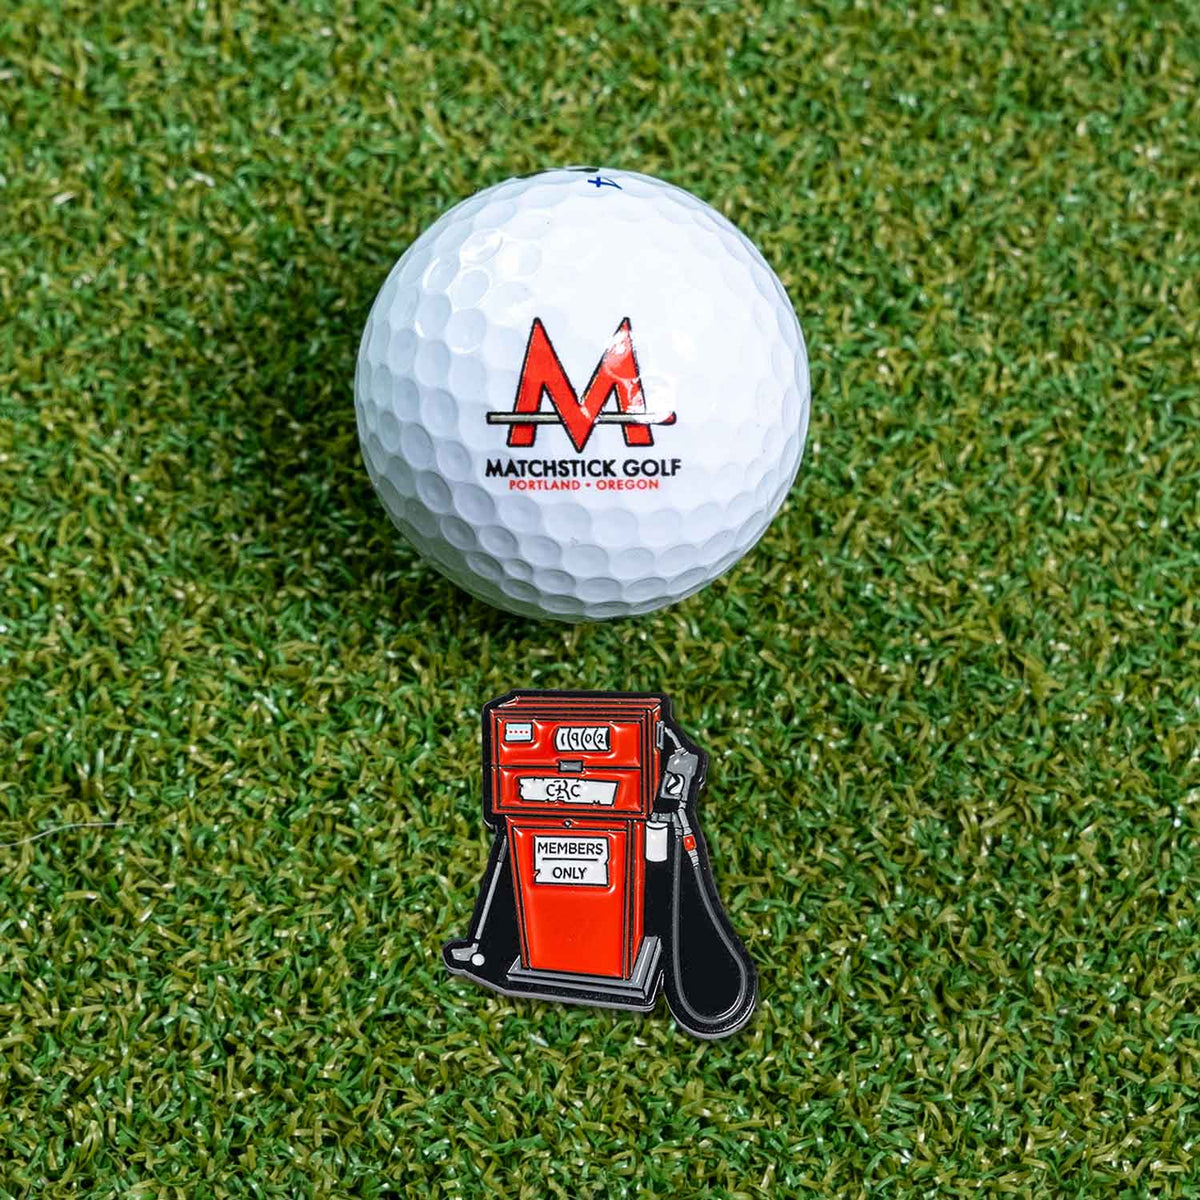 gas pump golf ball marker on grass with ball